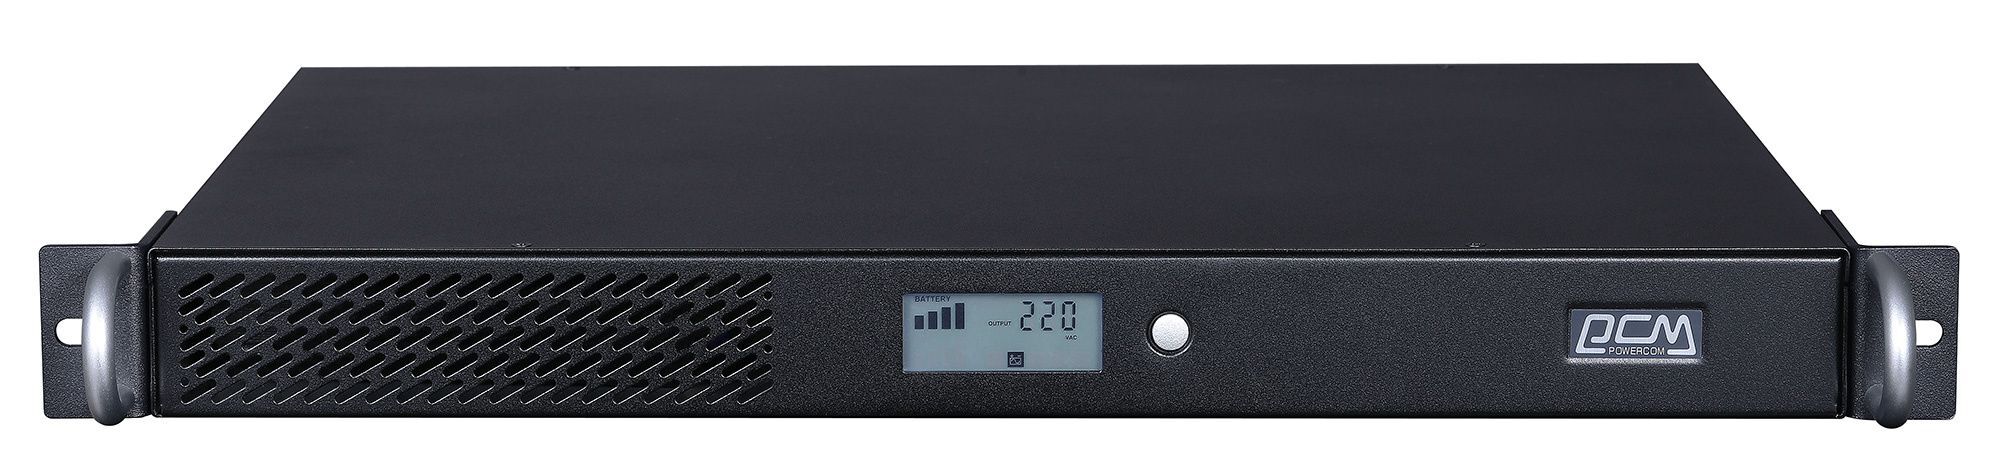 Оборудование для системы видеонаблюдения Powercom SPR-700